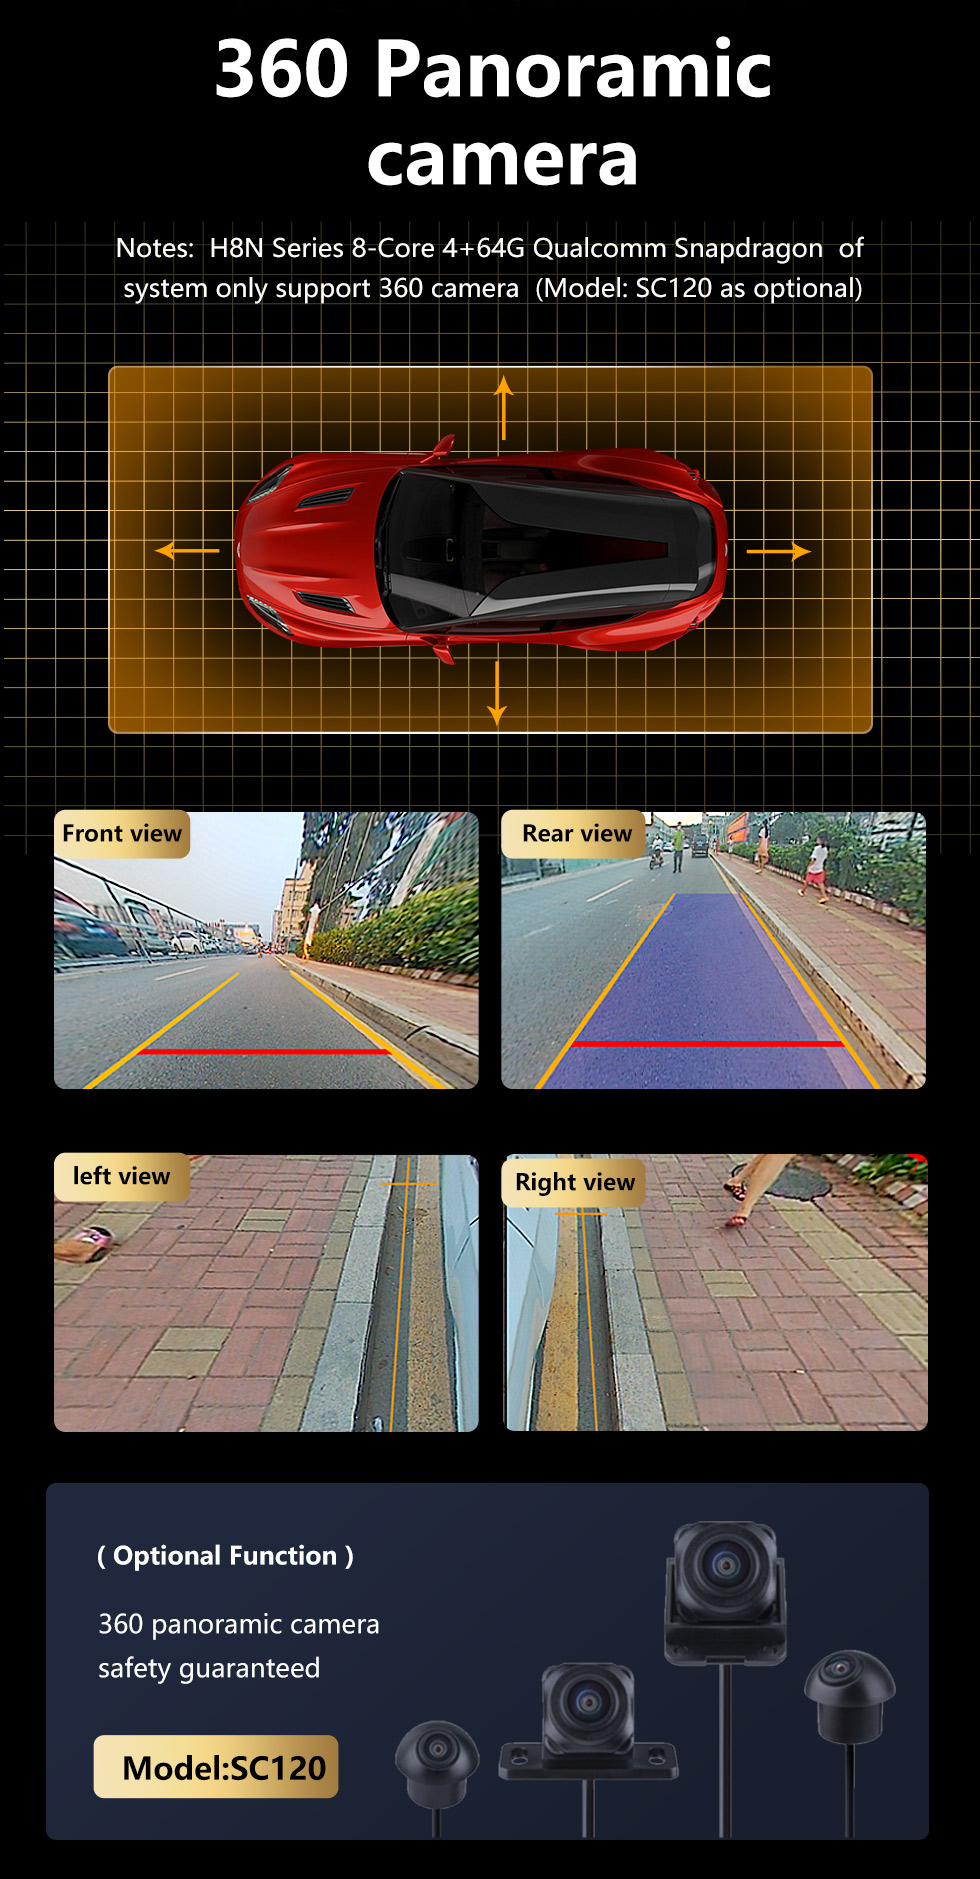 Seicane 8,8-дюймовый Android 10.0 для BMW 5 серии E60 2009-2010 3 серии E90 2009-2012 CCC Radio GPS-навигационная система с сенсорным экраном HD Поддержка Bluetooth Carplay